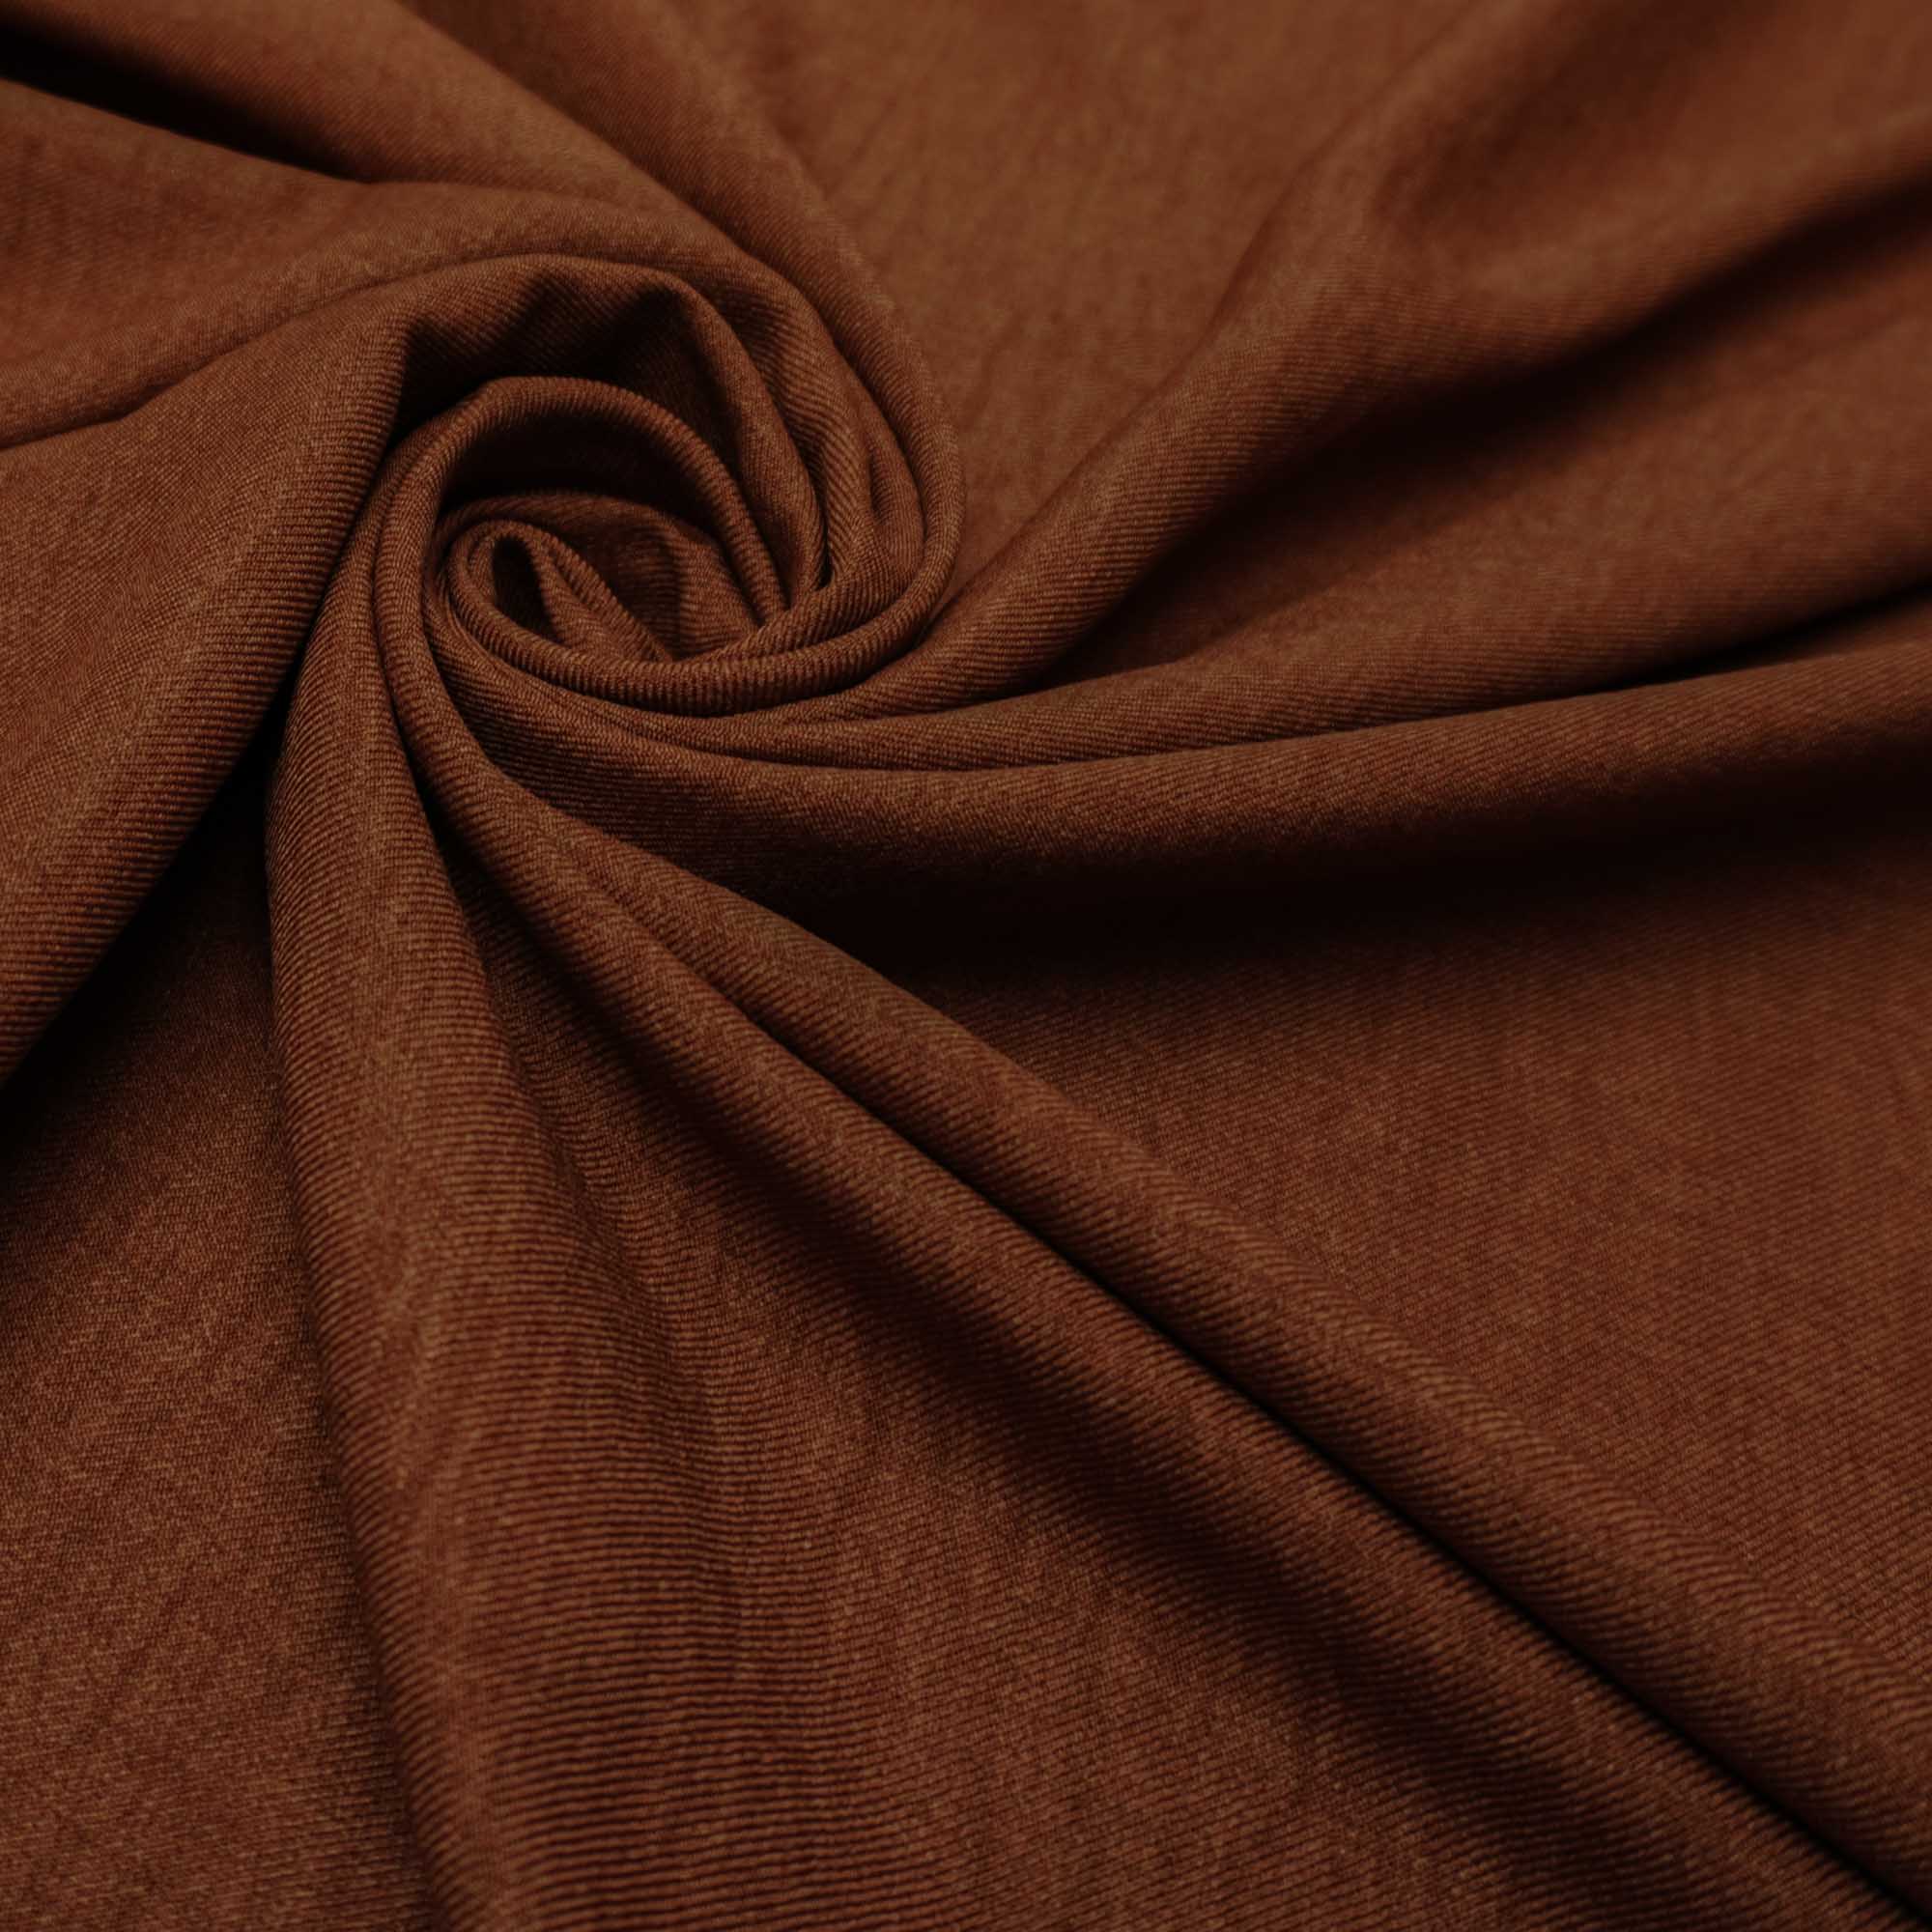 Tecido alfaiataria com textura de linho marrom chocolate